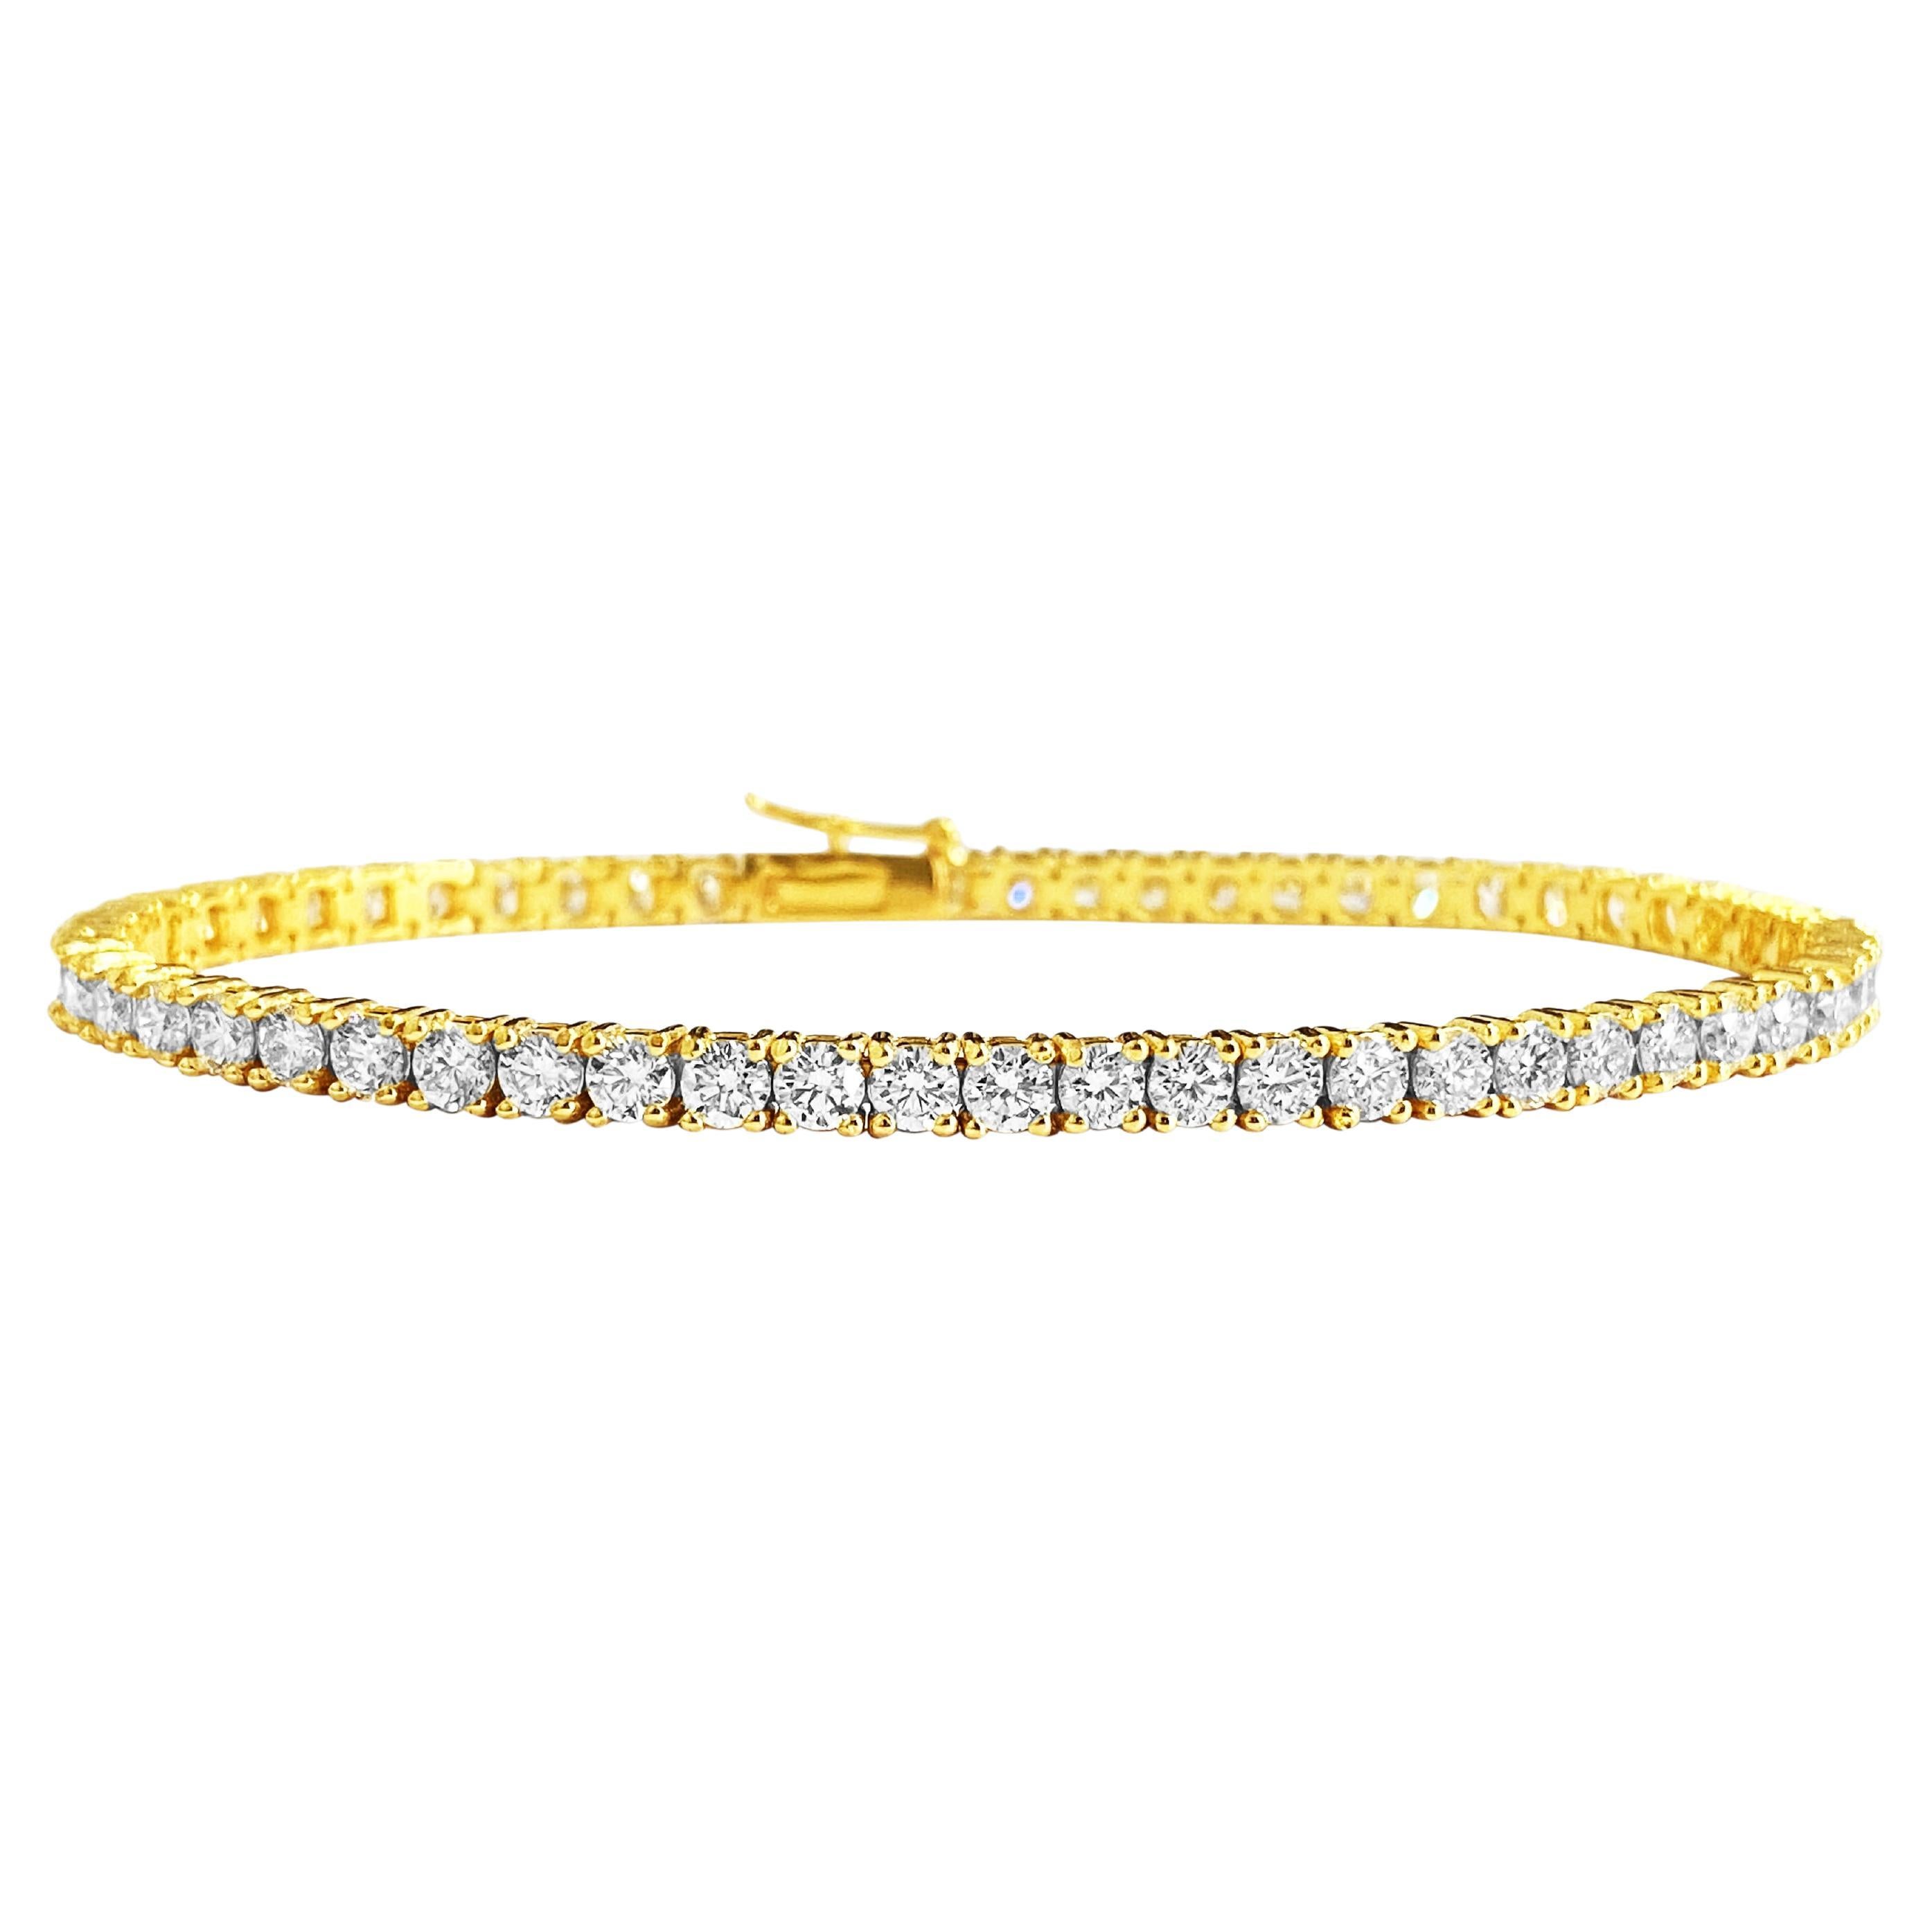 NEW 5.60 Carat VVS Diamond Tennis Bracelet in 14k Gold For Sale